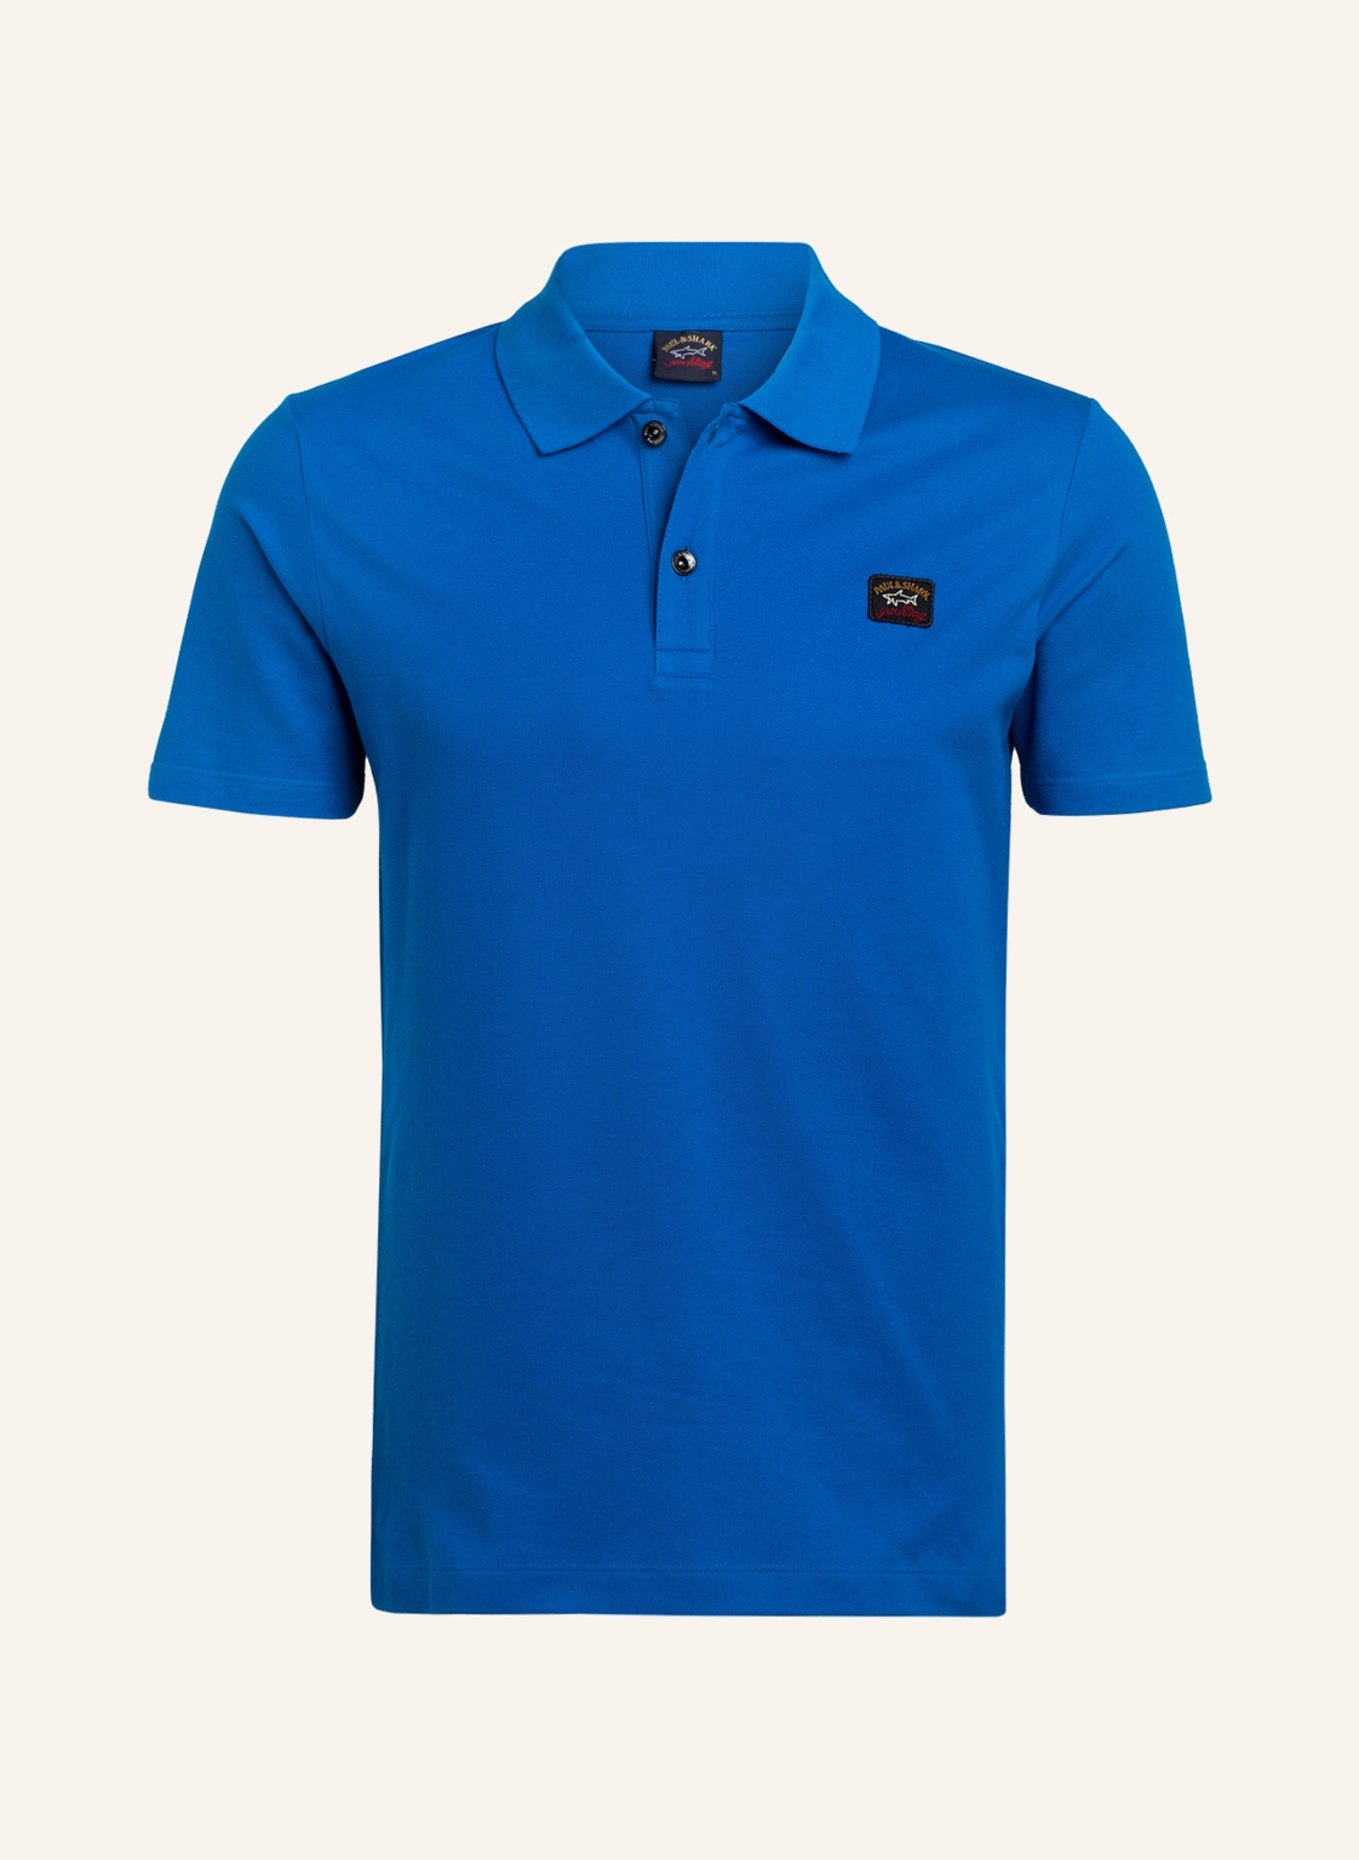 PAUL & SHARK Piqué-Poloshirt, Farbe: BLAU (Bild 1)